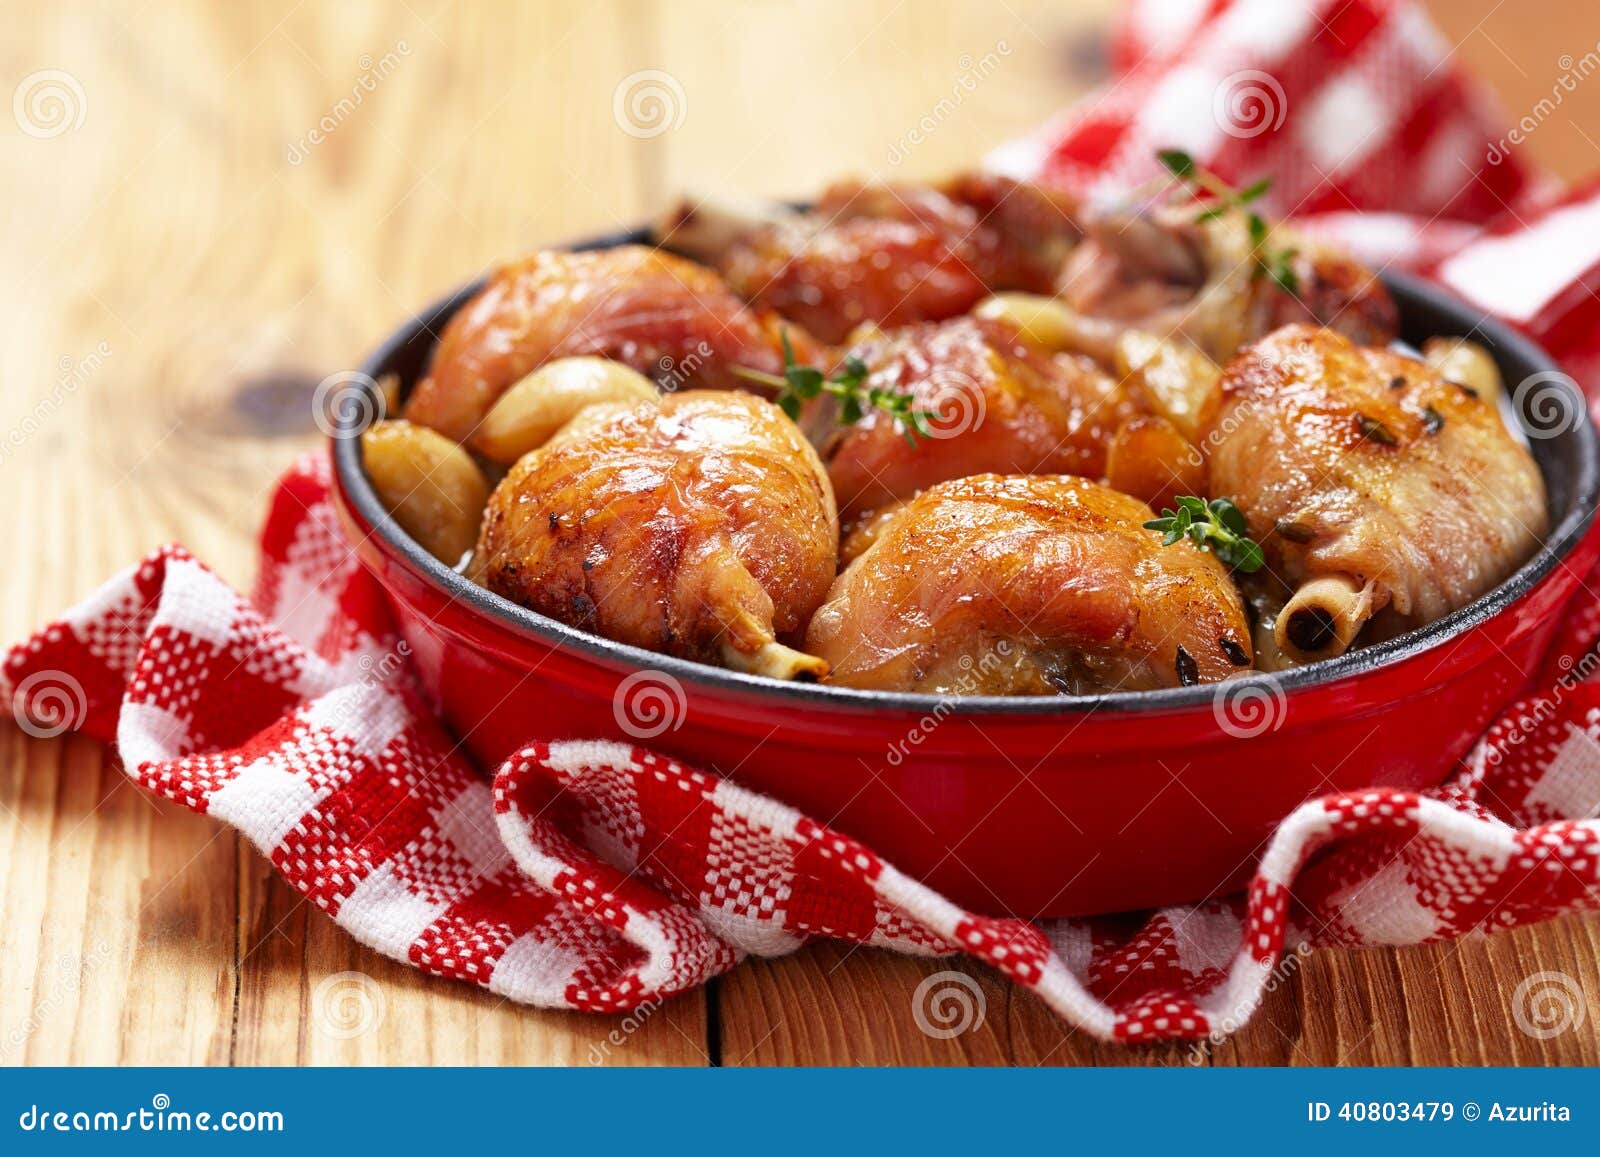 Gebratenes Huhn Mit Knoblauch Stockbild - Bild von pfeffer, gebacken ...